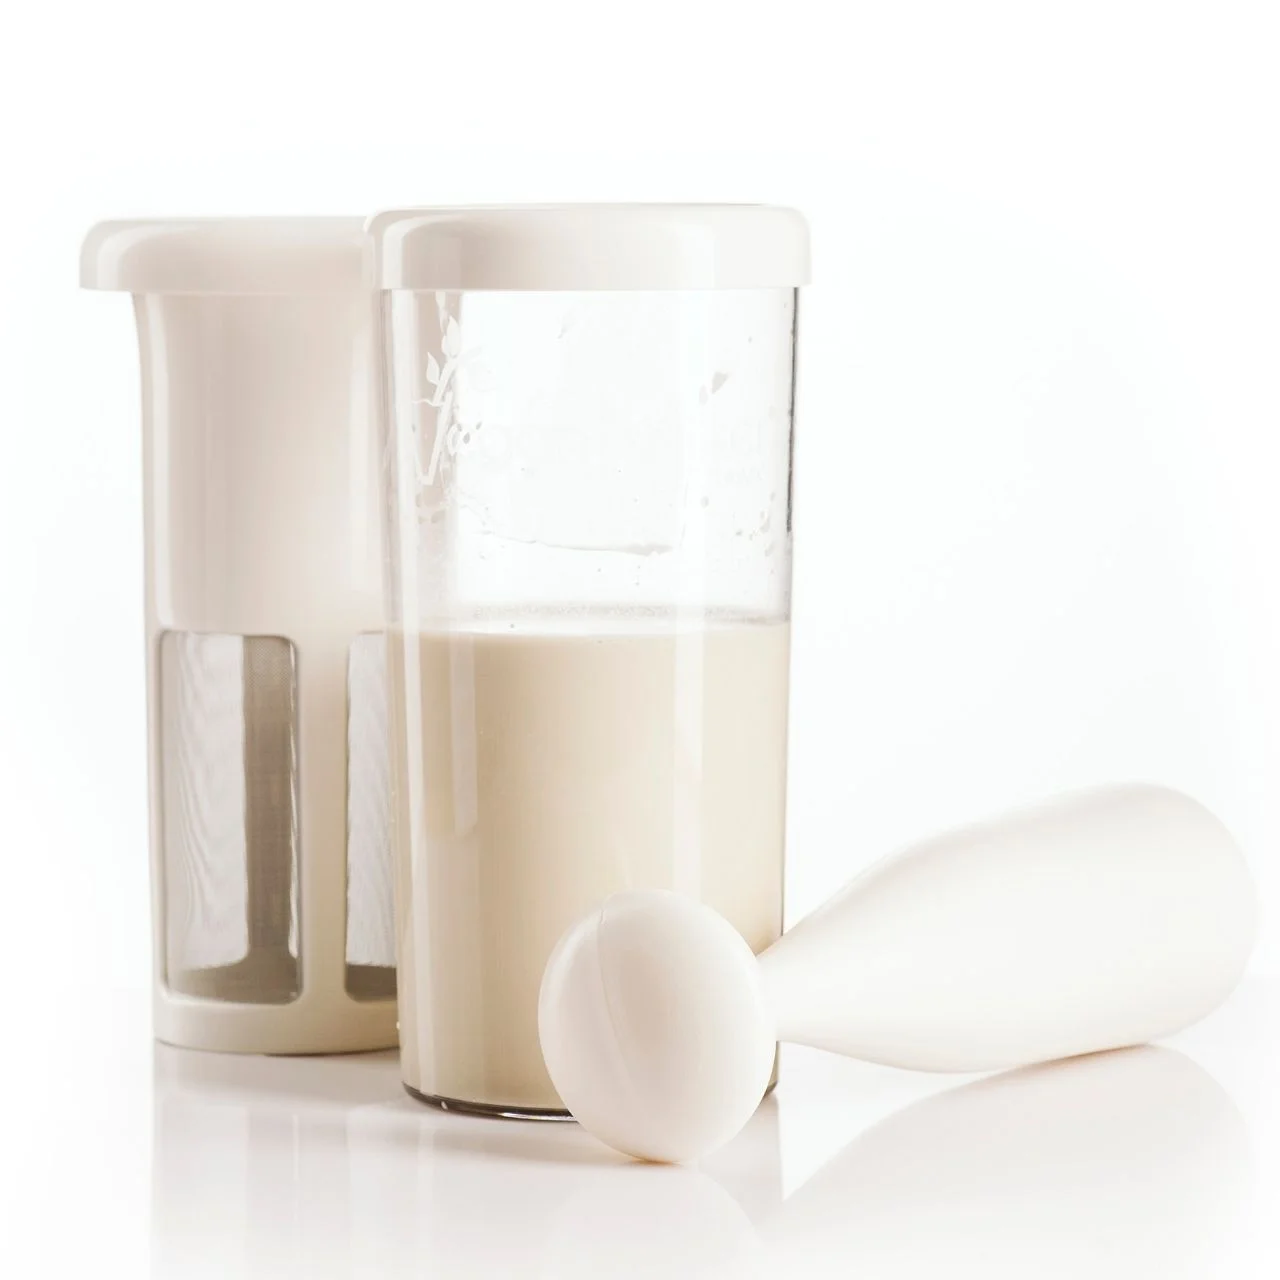 CREATE VEGAN MILK MAKER Machine à lait végétal de 1,5L acheter